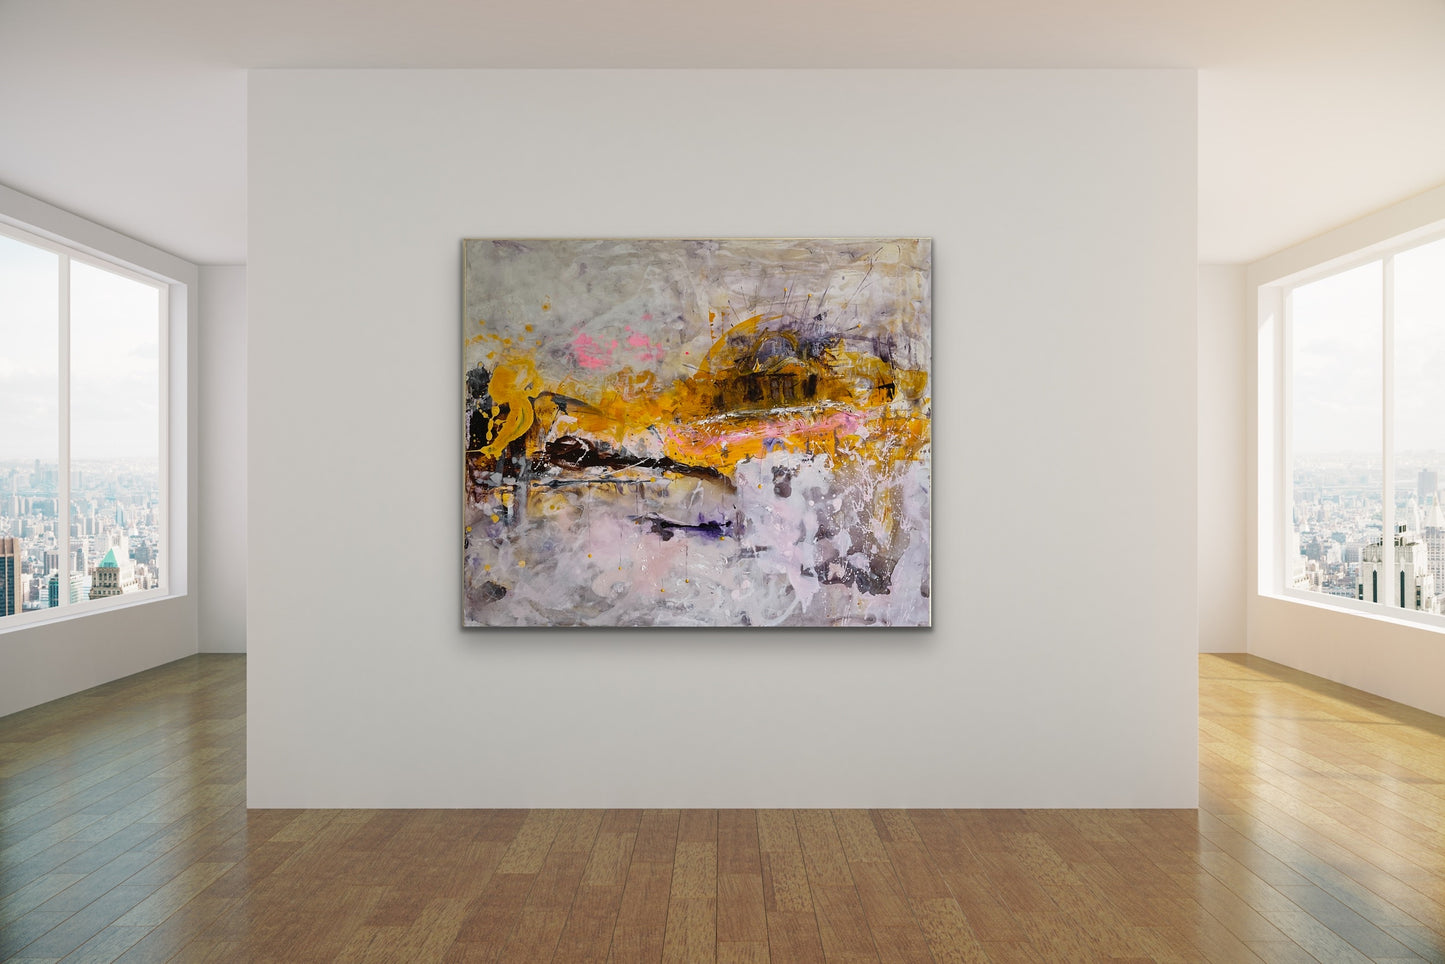 Abstrakt maleri, 100x120 cm, "Mulighedernes horisont" by Lone Reedtz , Abstrakt ekspressivt akrylmaleri på lærred